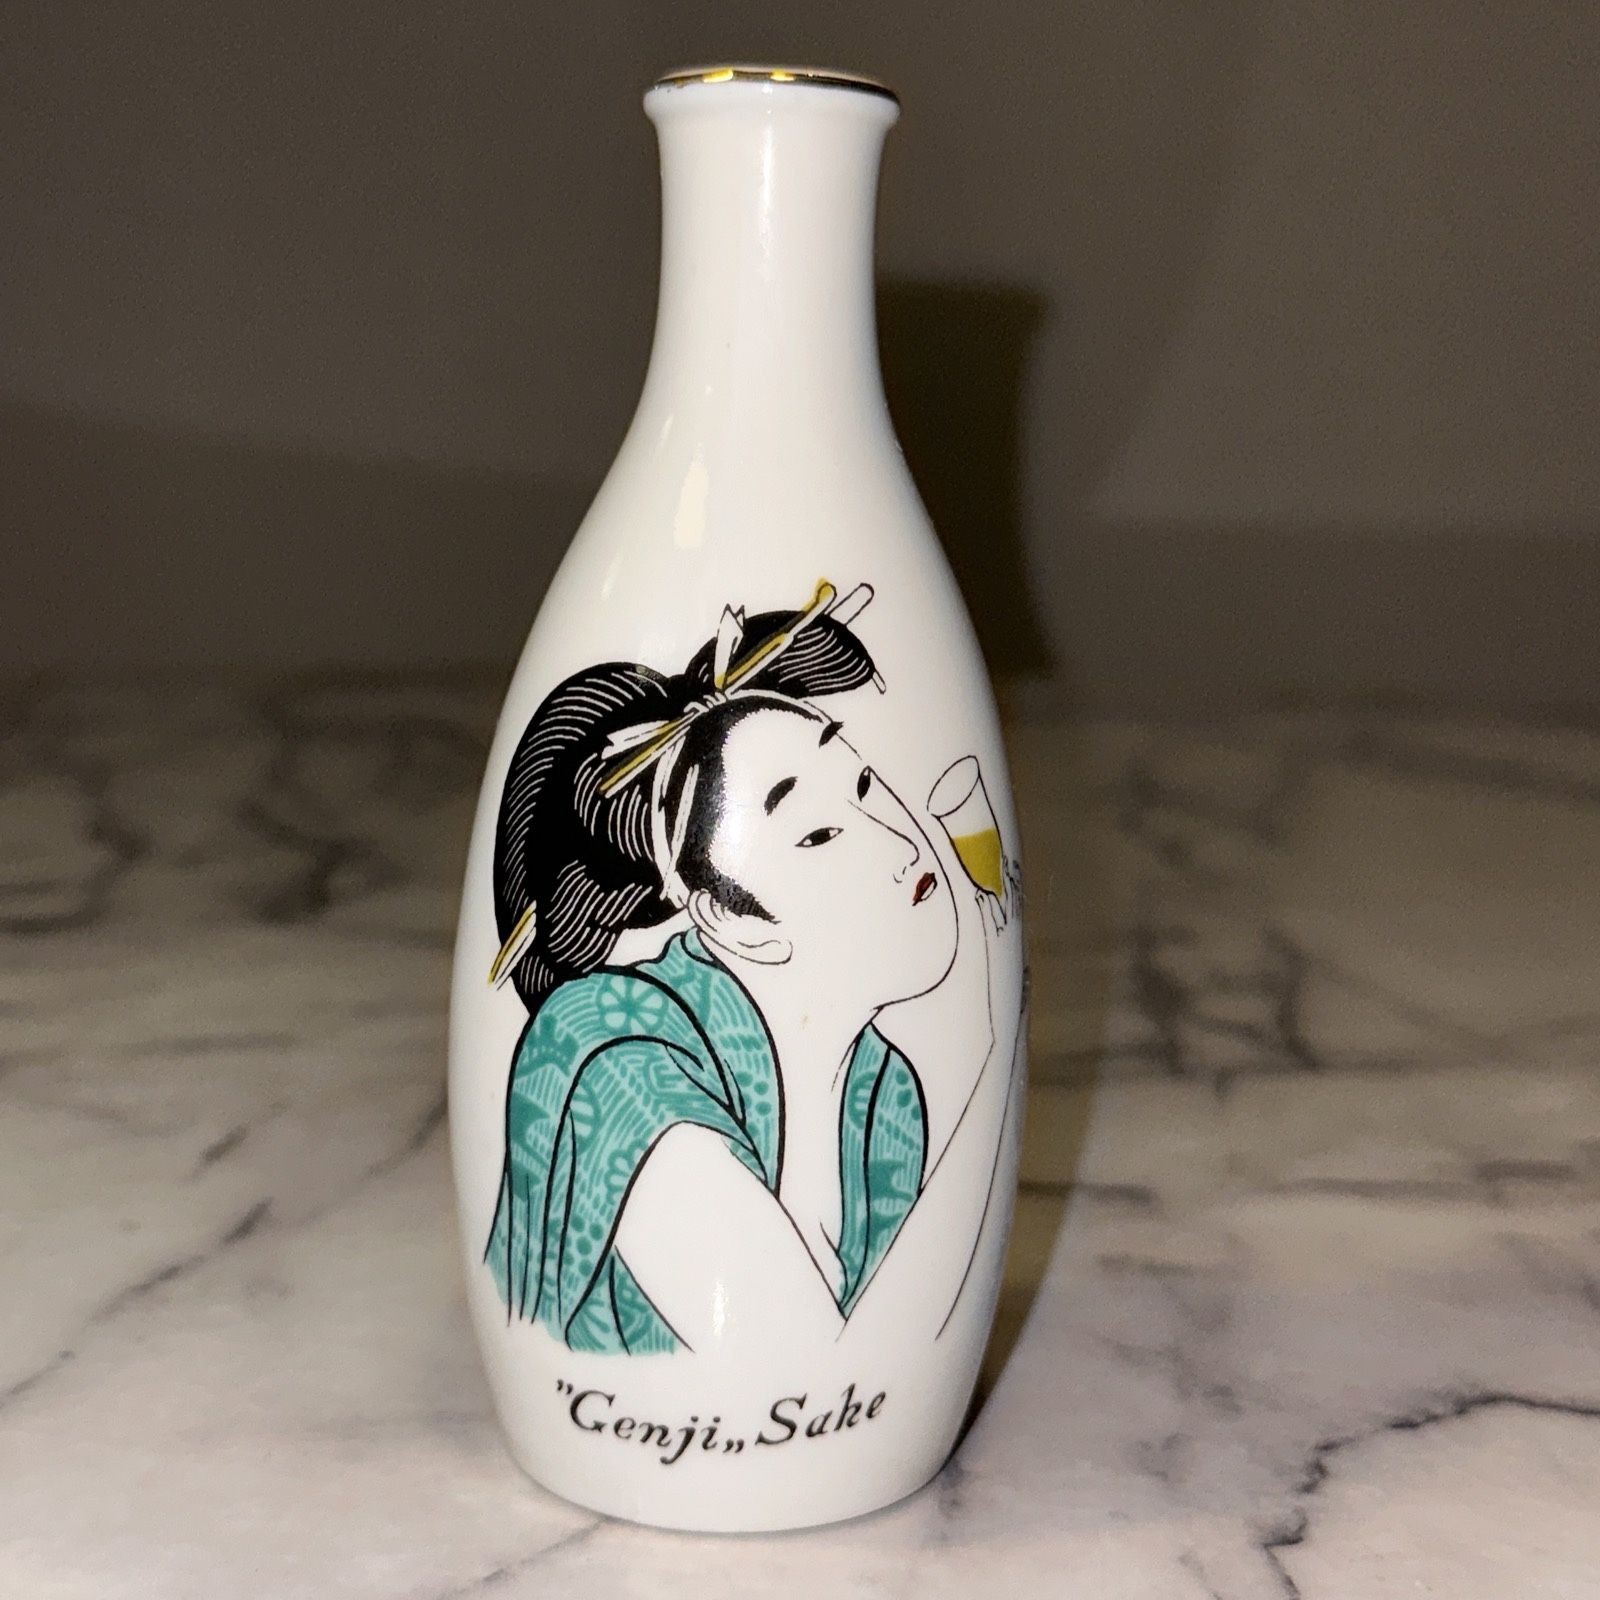 Vintage Genji Sake Japan 6oz Bottle